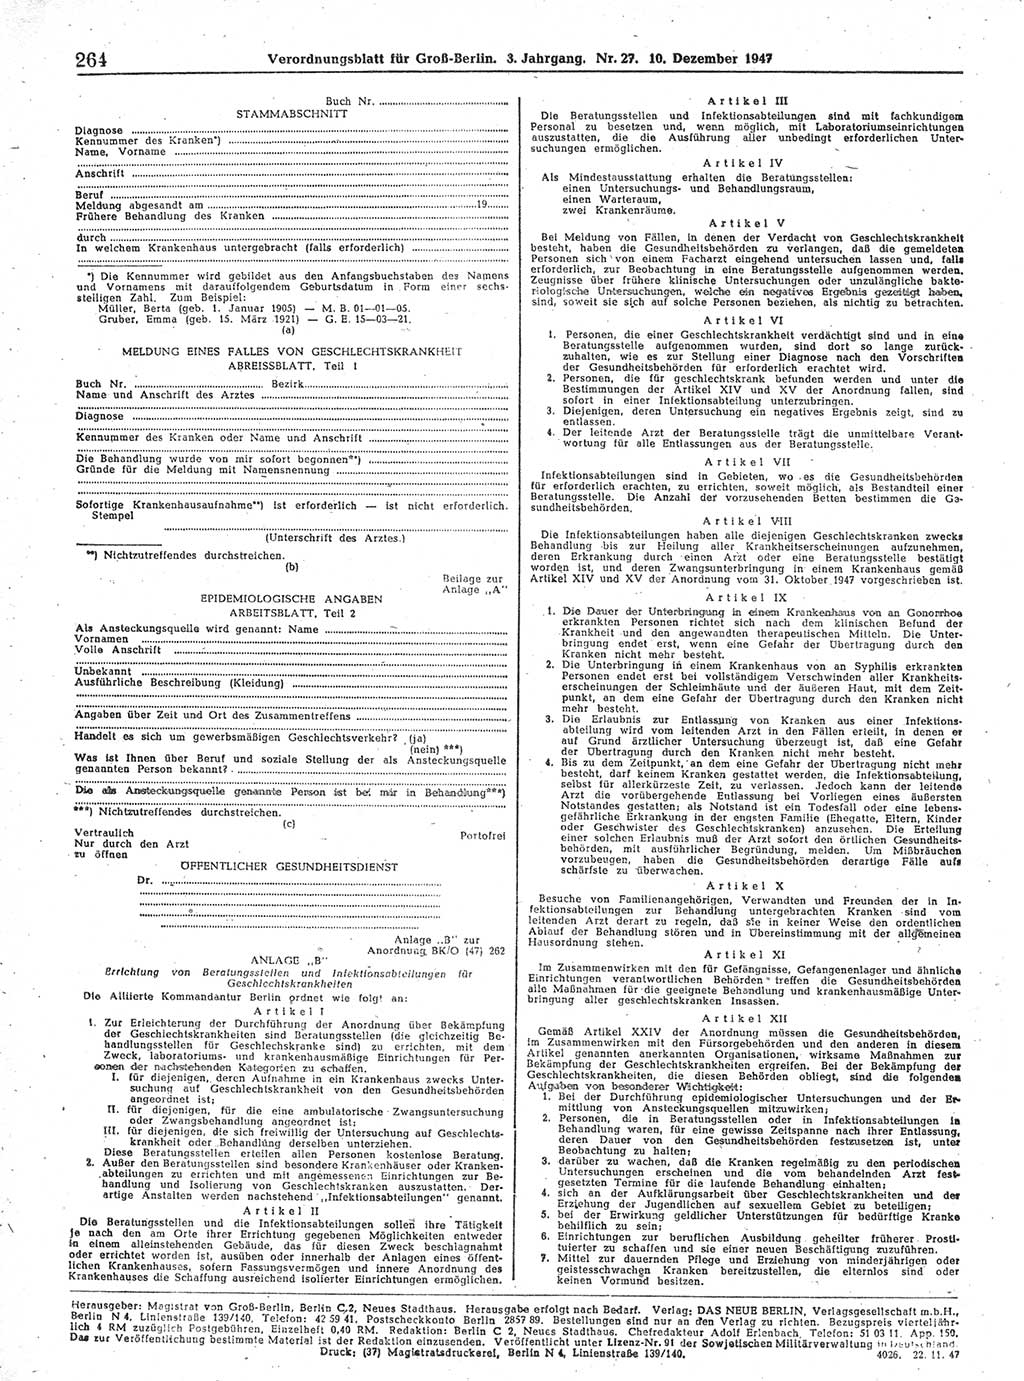 Verordnungsblatt (VOBl.) für Groß-Berlin 1947, Seite 264 (VOBl. Bln. 1947, S. 264)